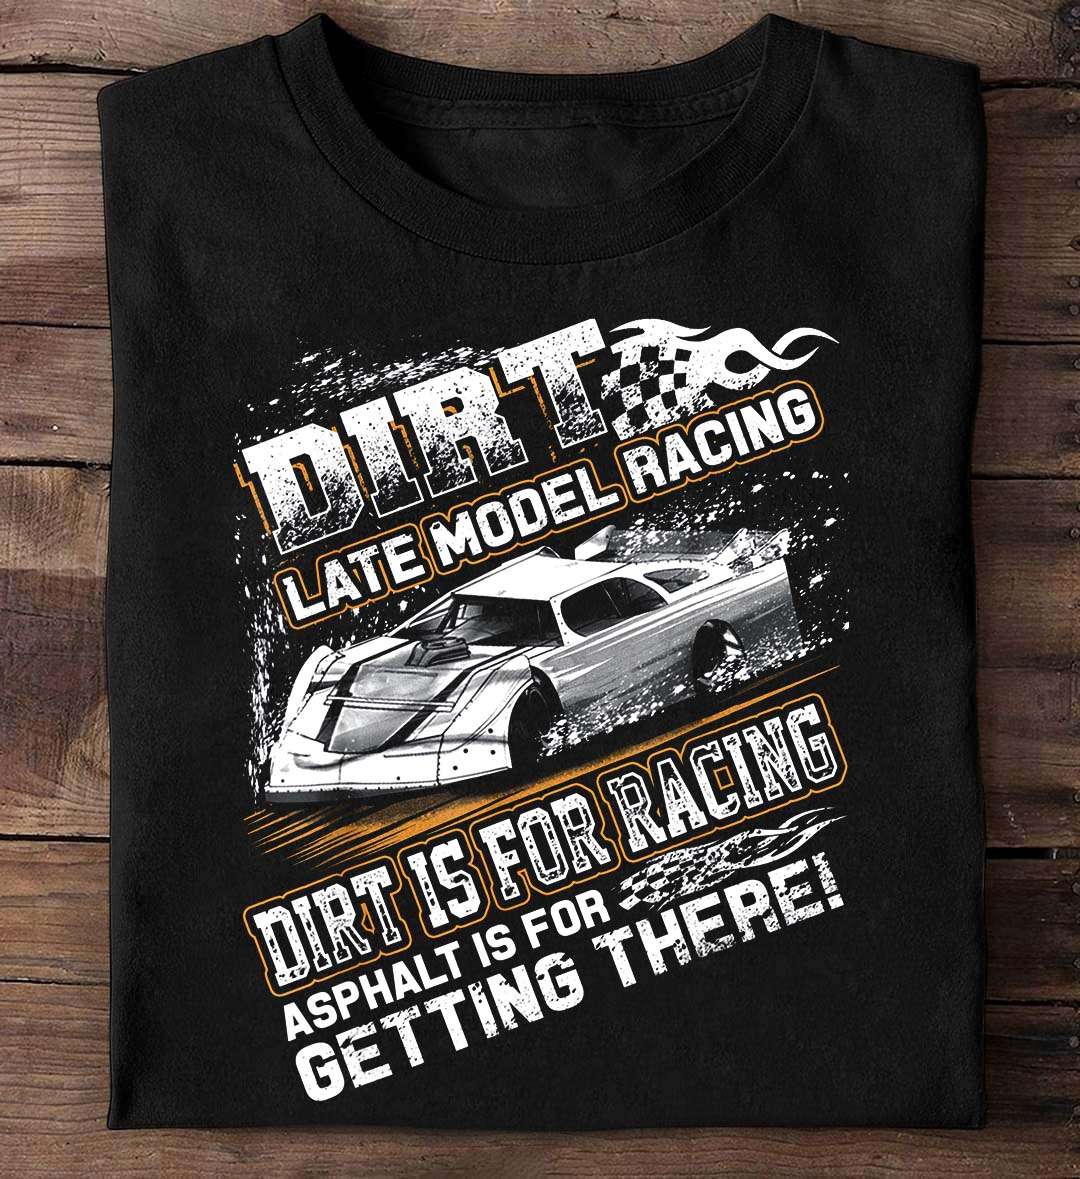 Dirt late model racing, dirt is for racing - Love dirt racing